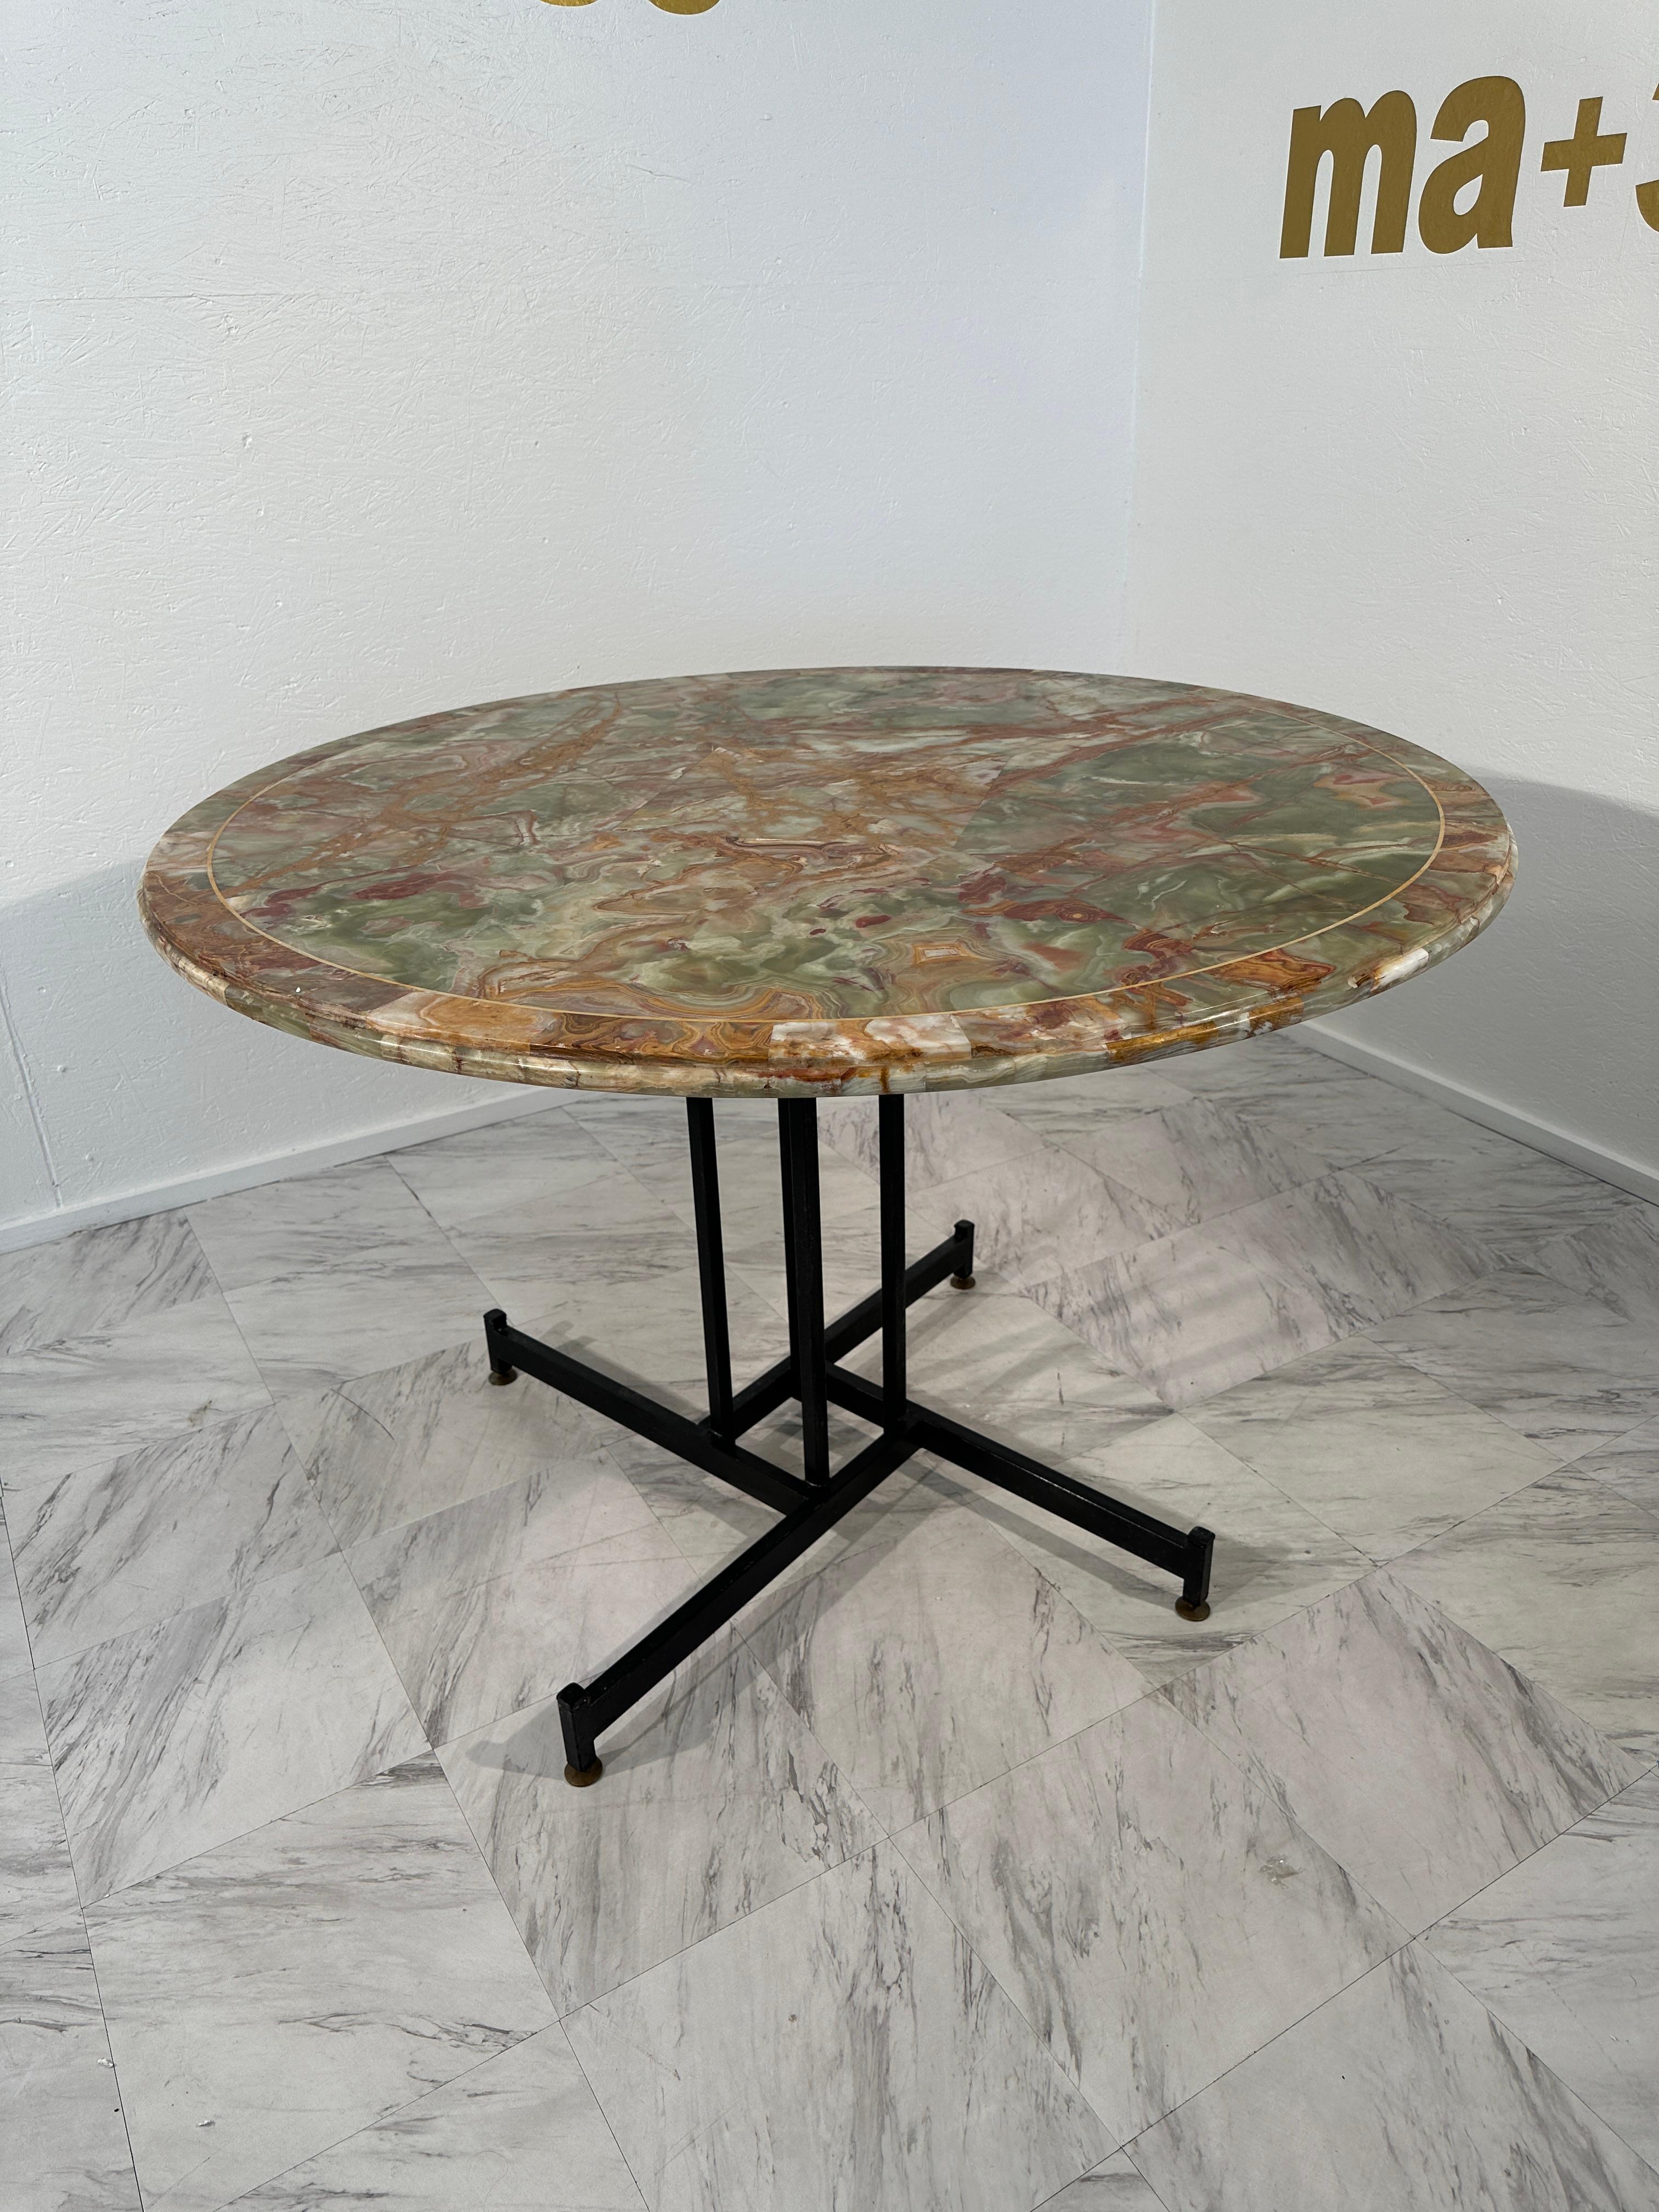 Der Mid Century Italian Round Table von Ignazio Gardella aus den 1950er Jahren ist ein exquisites Stück, das sich durch sein elegantes Design und seine hochwertigen Materialien auszeichnet. Der Tisch verfügt über eine runde Platte aus luxuriösem